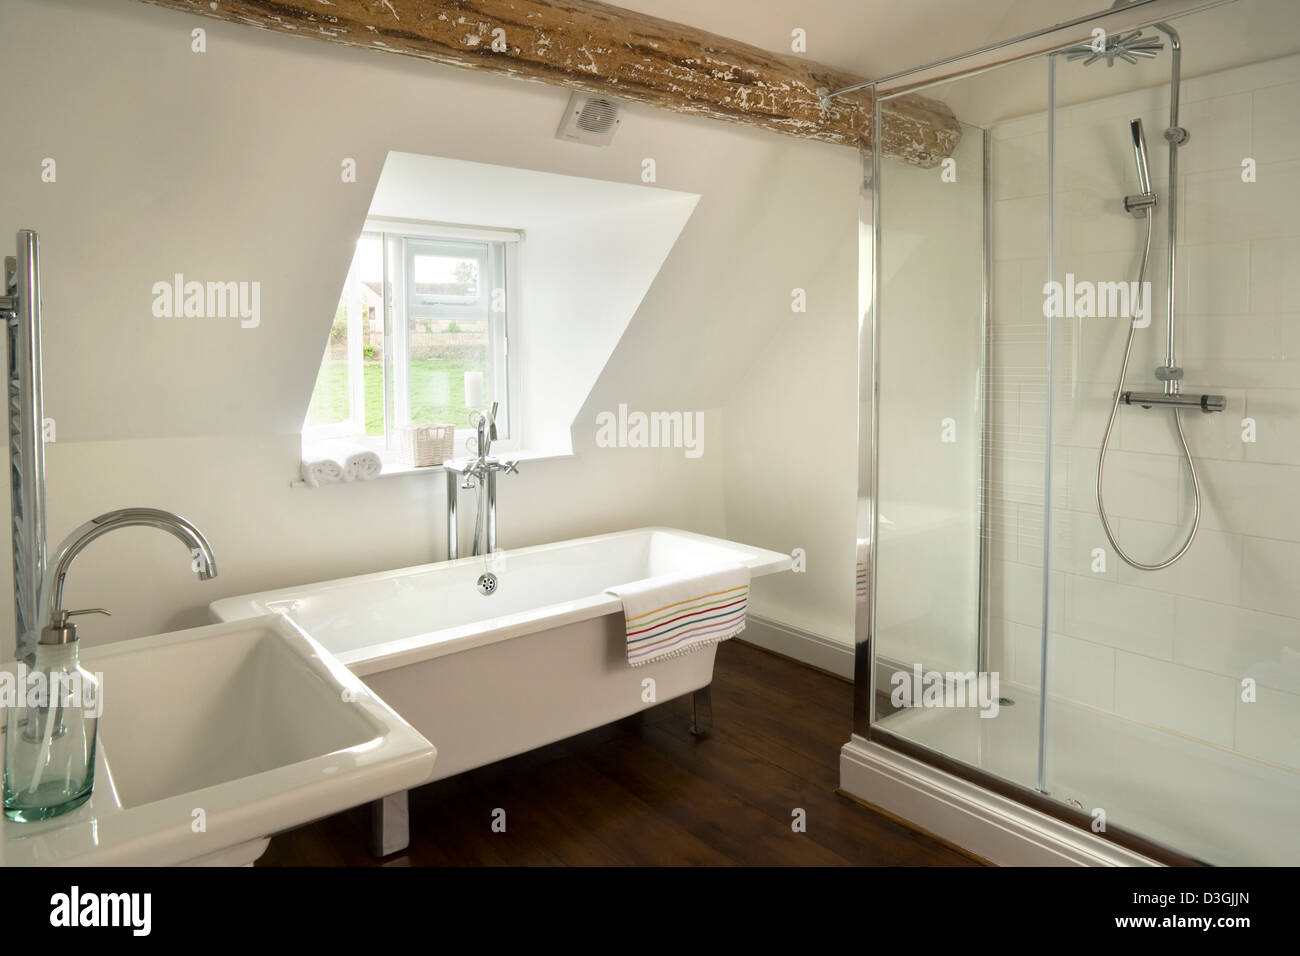 Modernes Bad mit einer Badewanne und einer großen modernen Sockel in Dusche  in einem Zimmer im Dachgeschoss gebaut Stockfotografie - Alamy